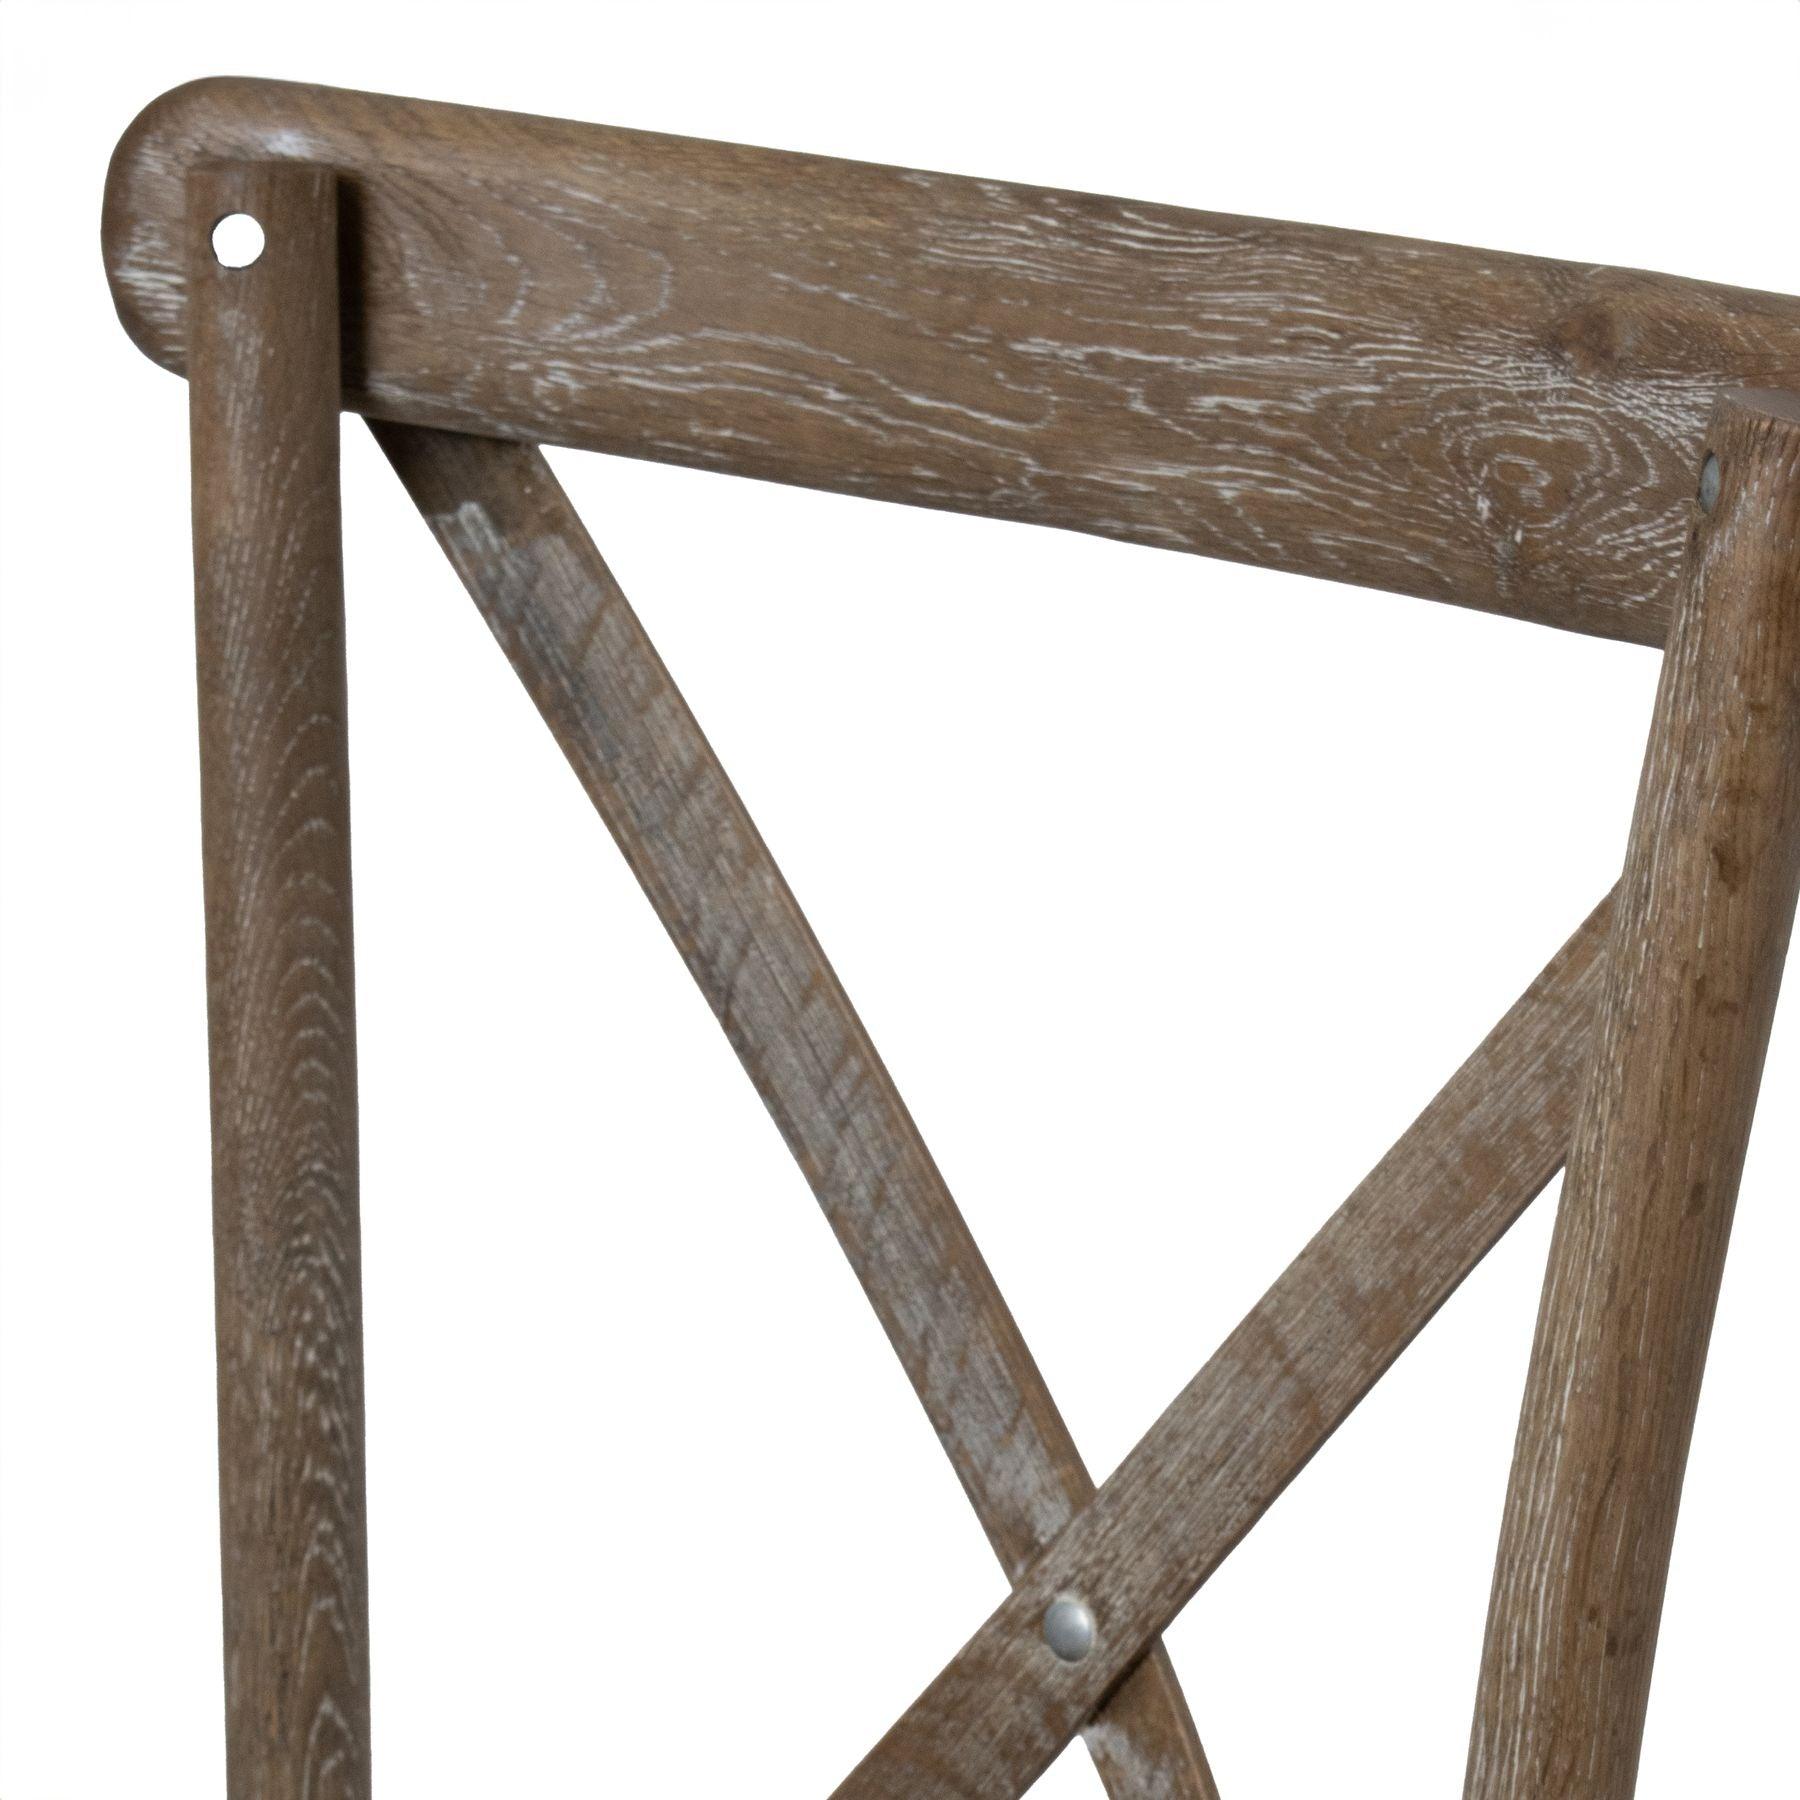 Light Oak Cross Back Dining Chair - Abode Decor